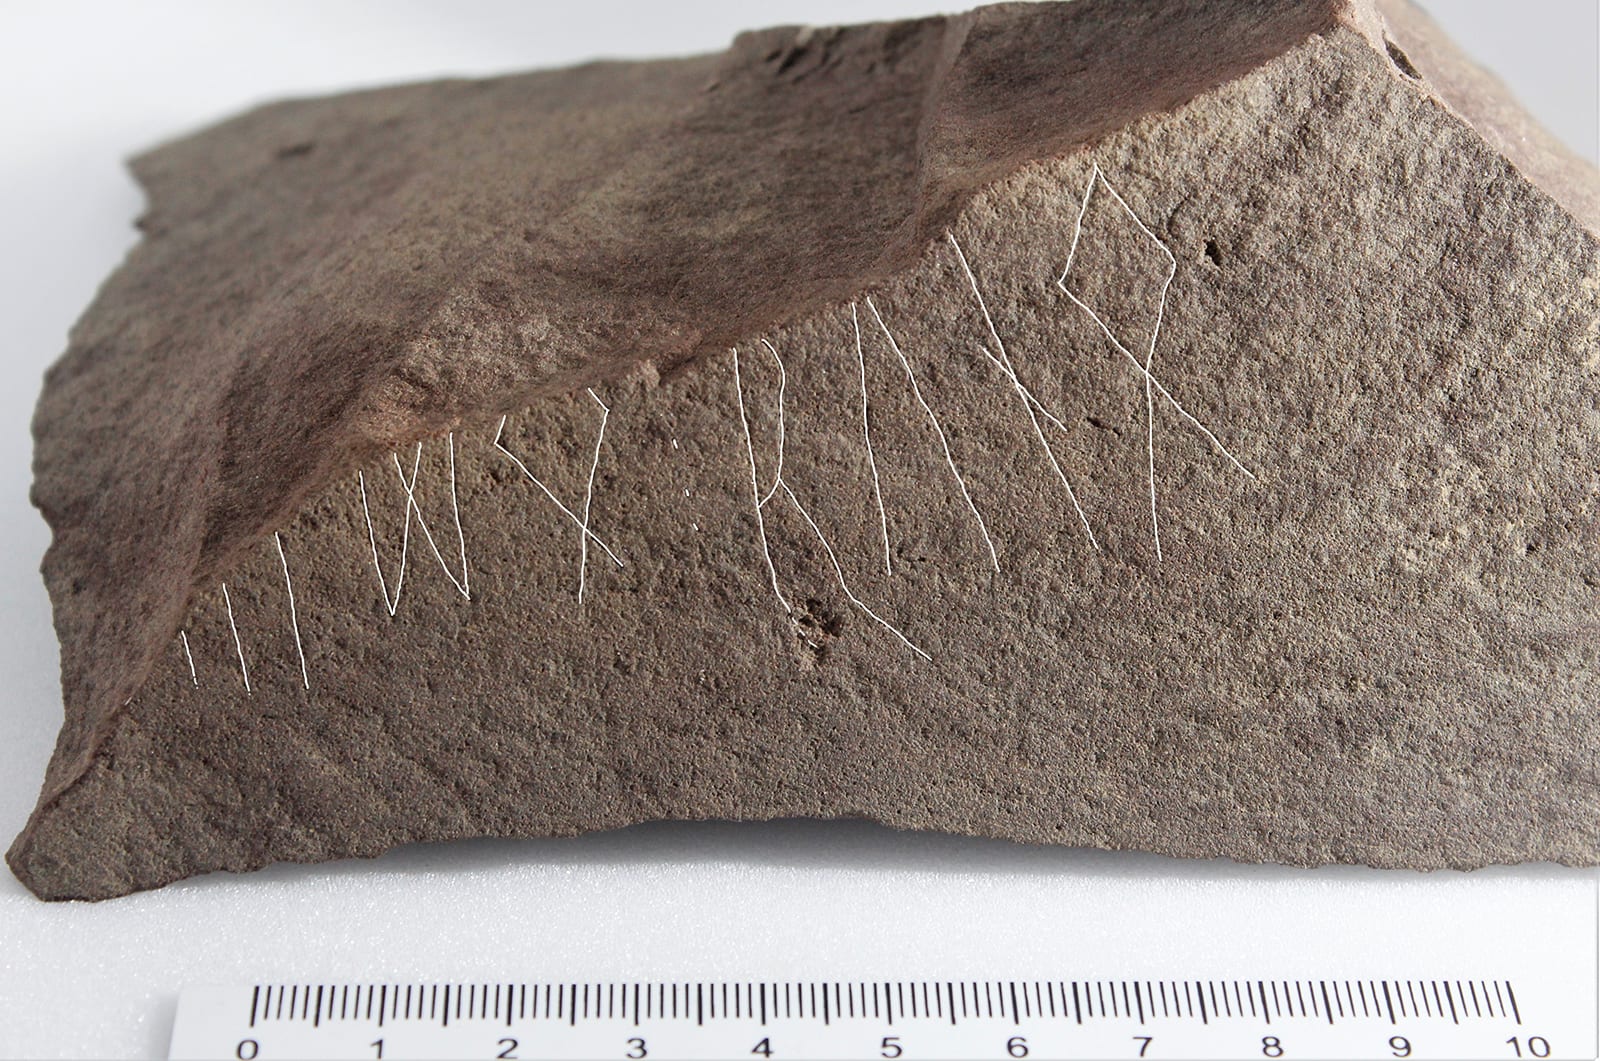 به نقش غامض.. اكتشاف أقدم حجر روني مؤرخ في العالم بالنرويج 